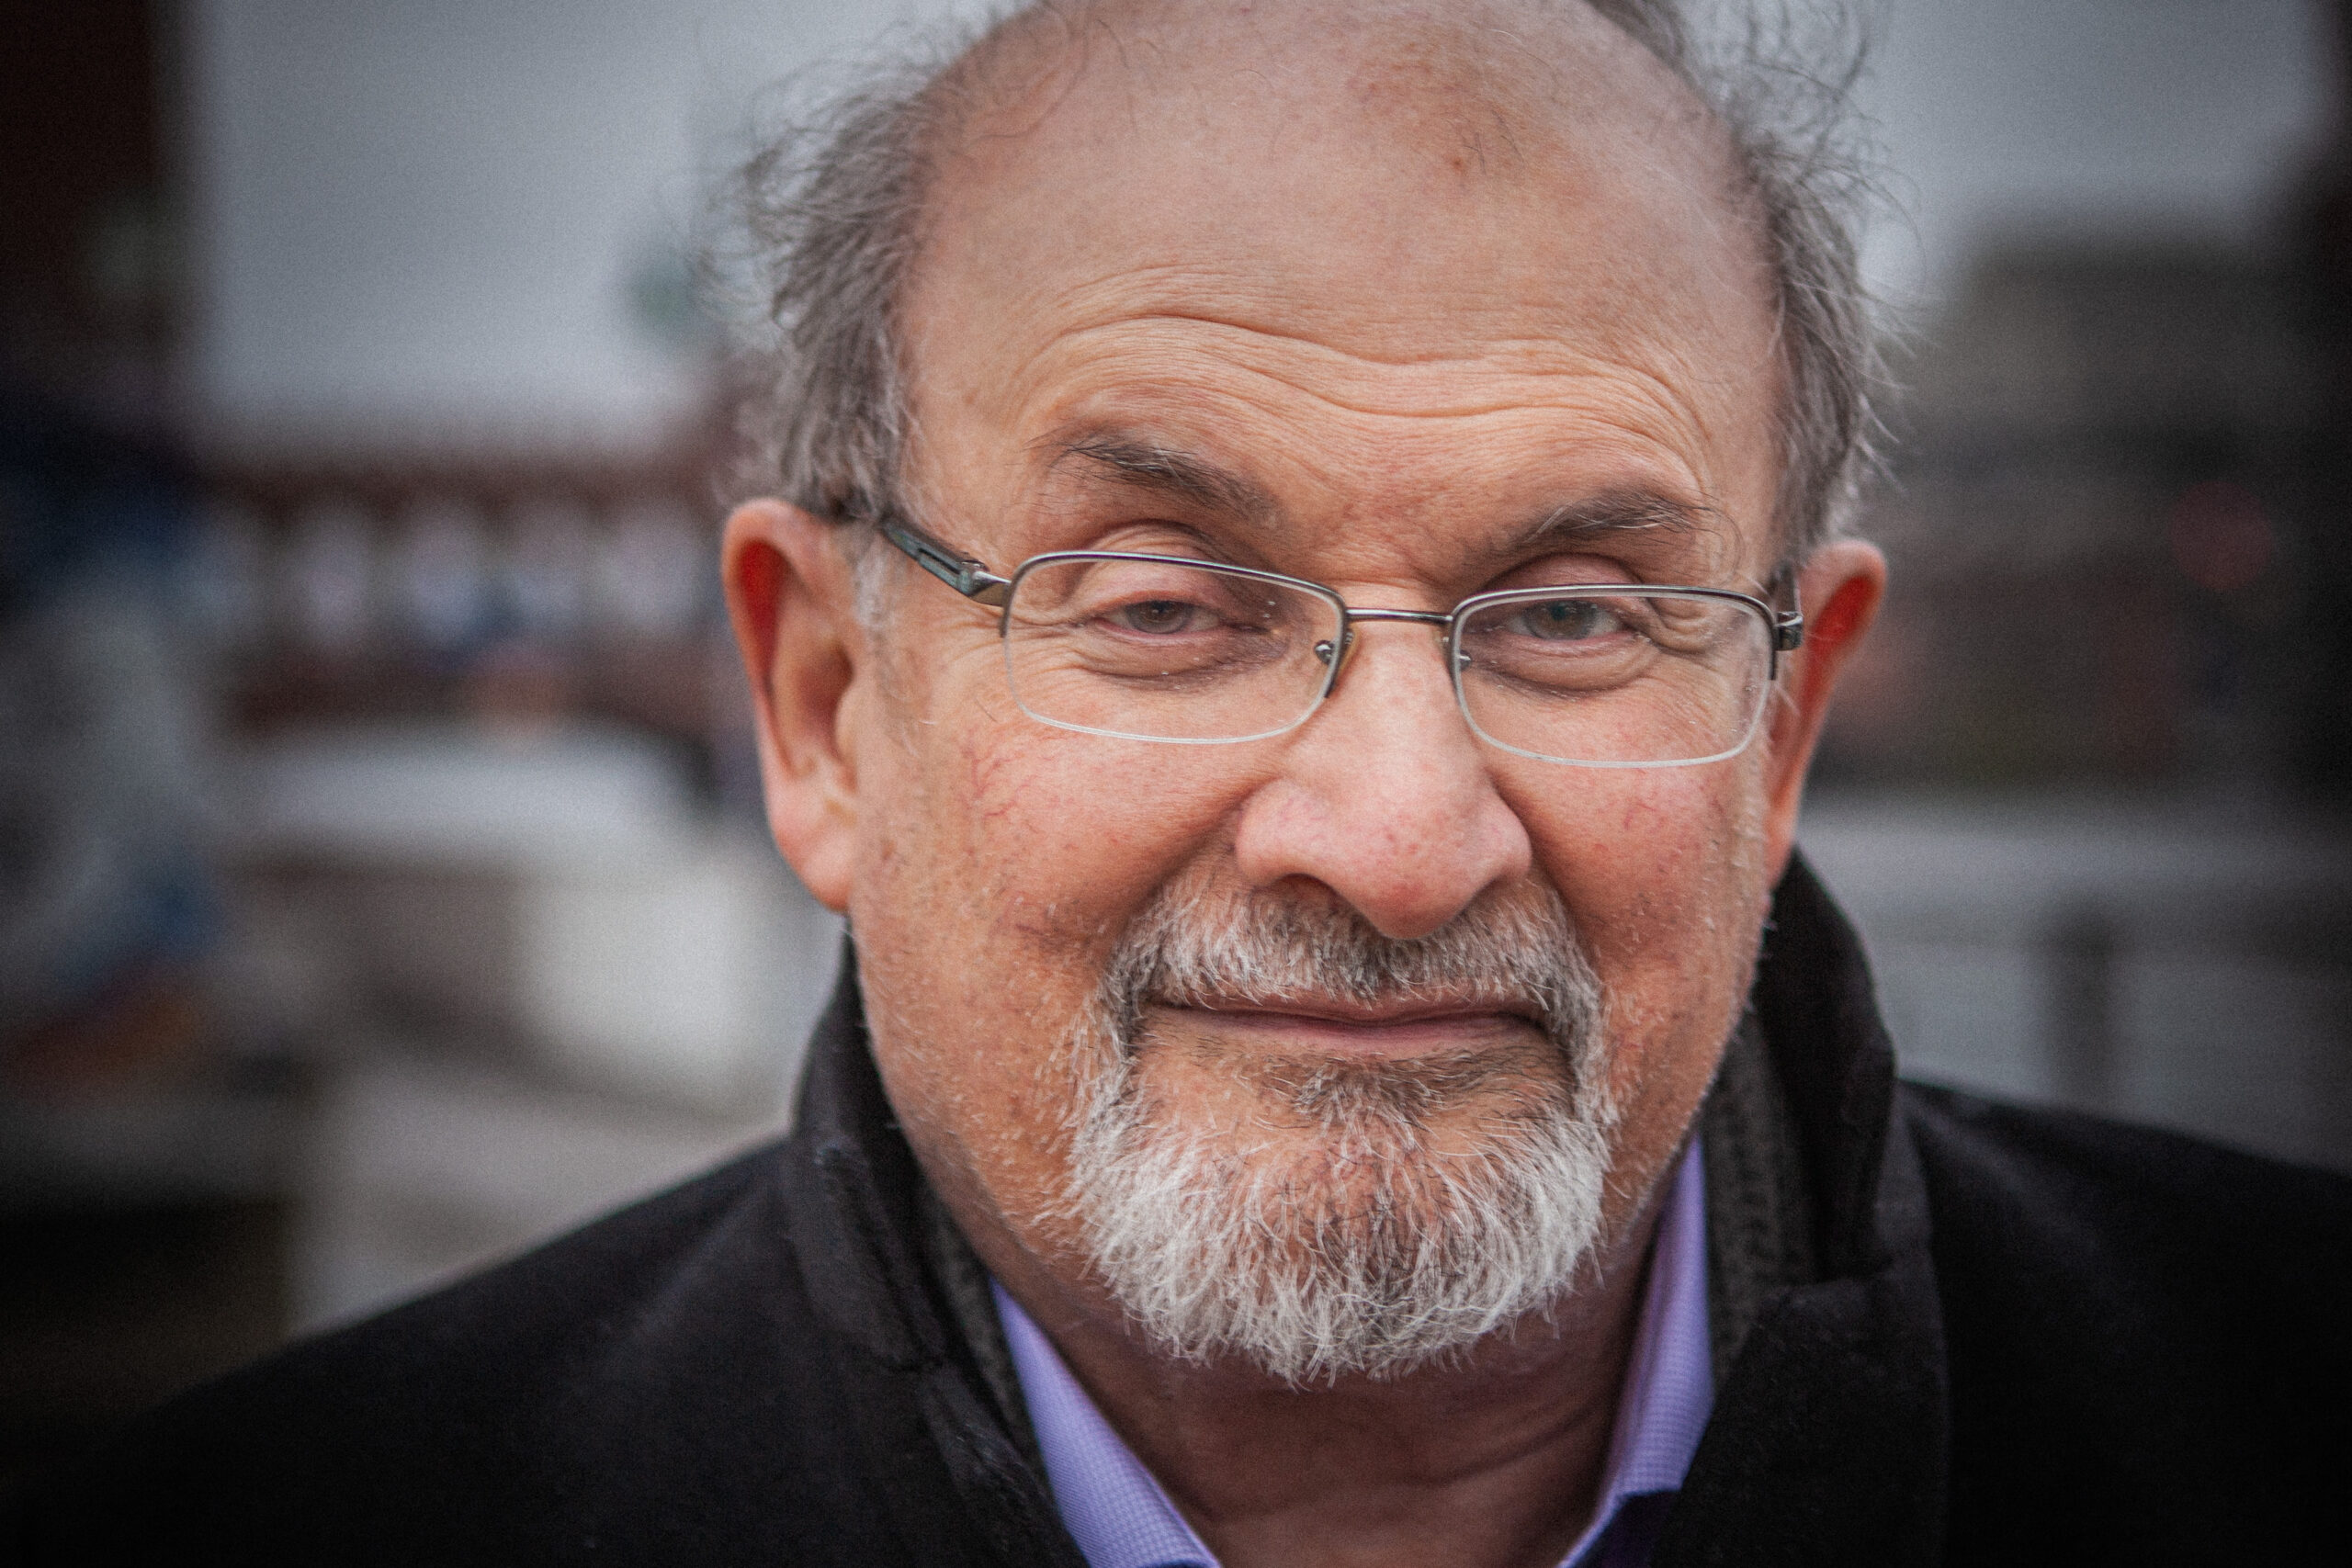 Messerattacke auf Salman Rushdie – Zufall oder gut kalkuliert?